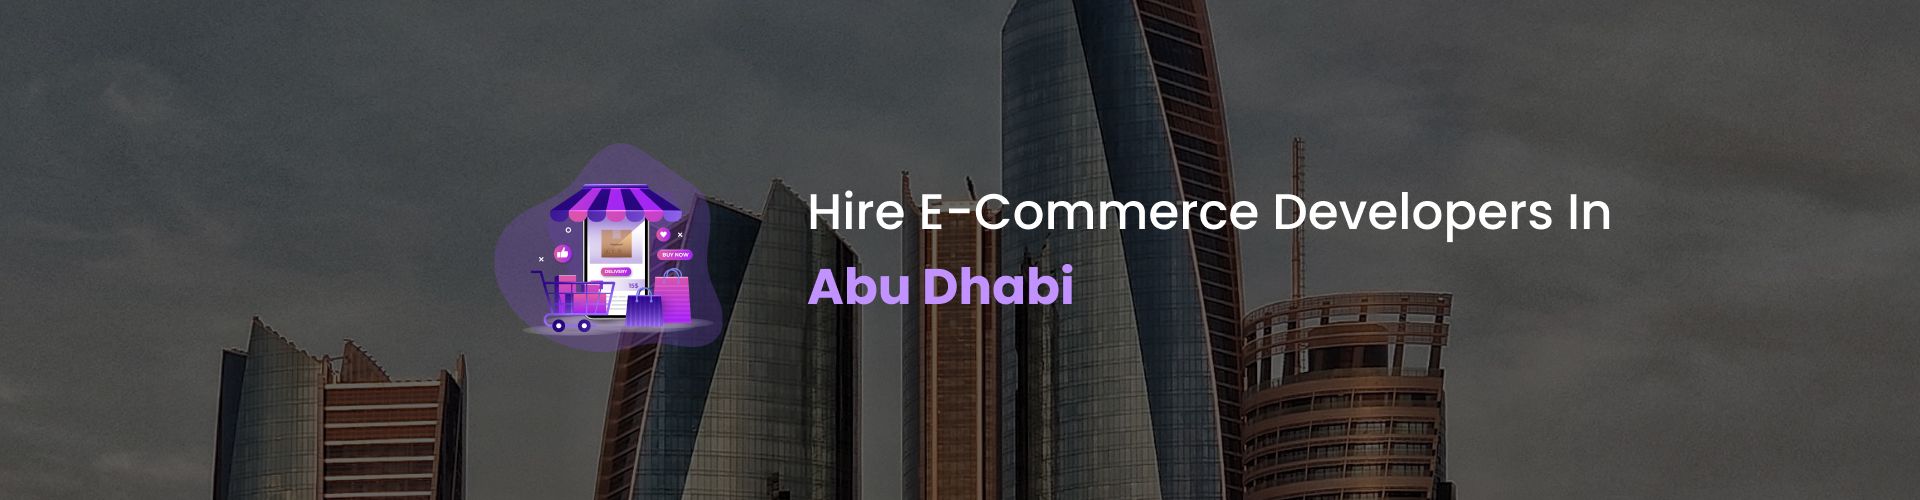 ecommerce developers abu dhabi